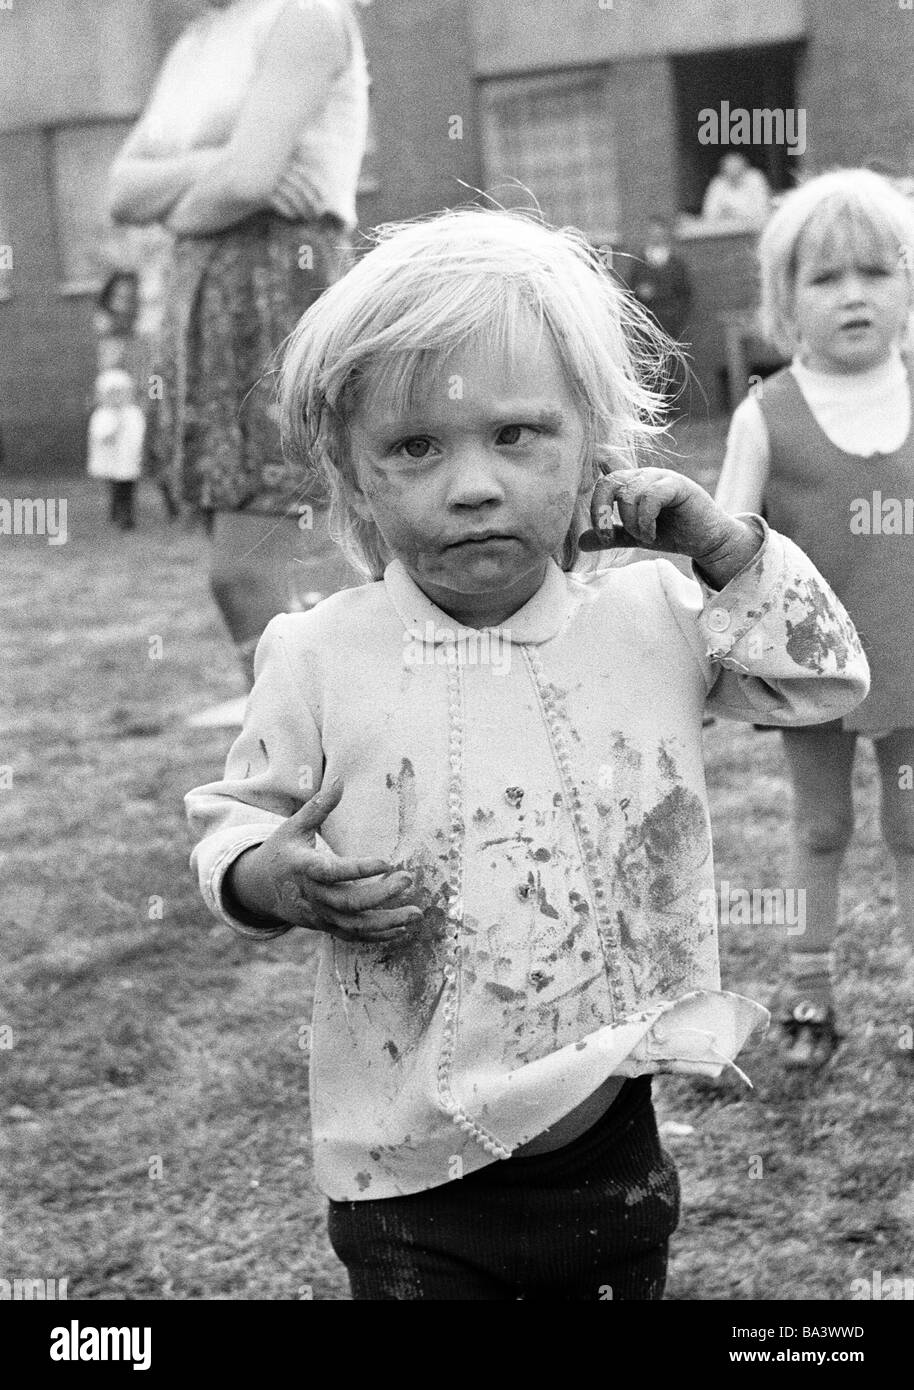 Negli anni settanta, foto in bianco e nero, persone, bambini, bambina, ritratto, bambino di strada, sporco unkemptly, di età compresa tra i 4 ed i 6 anni Foto Stock